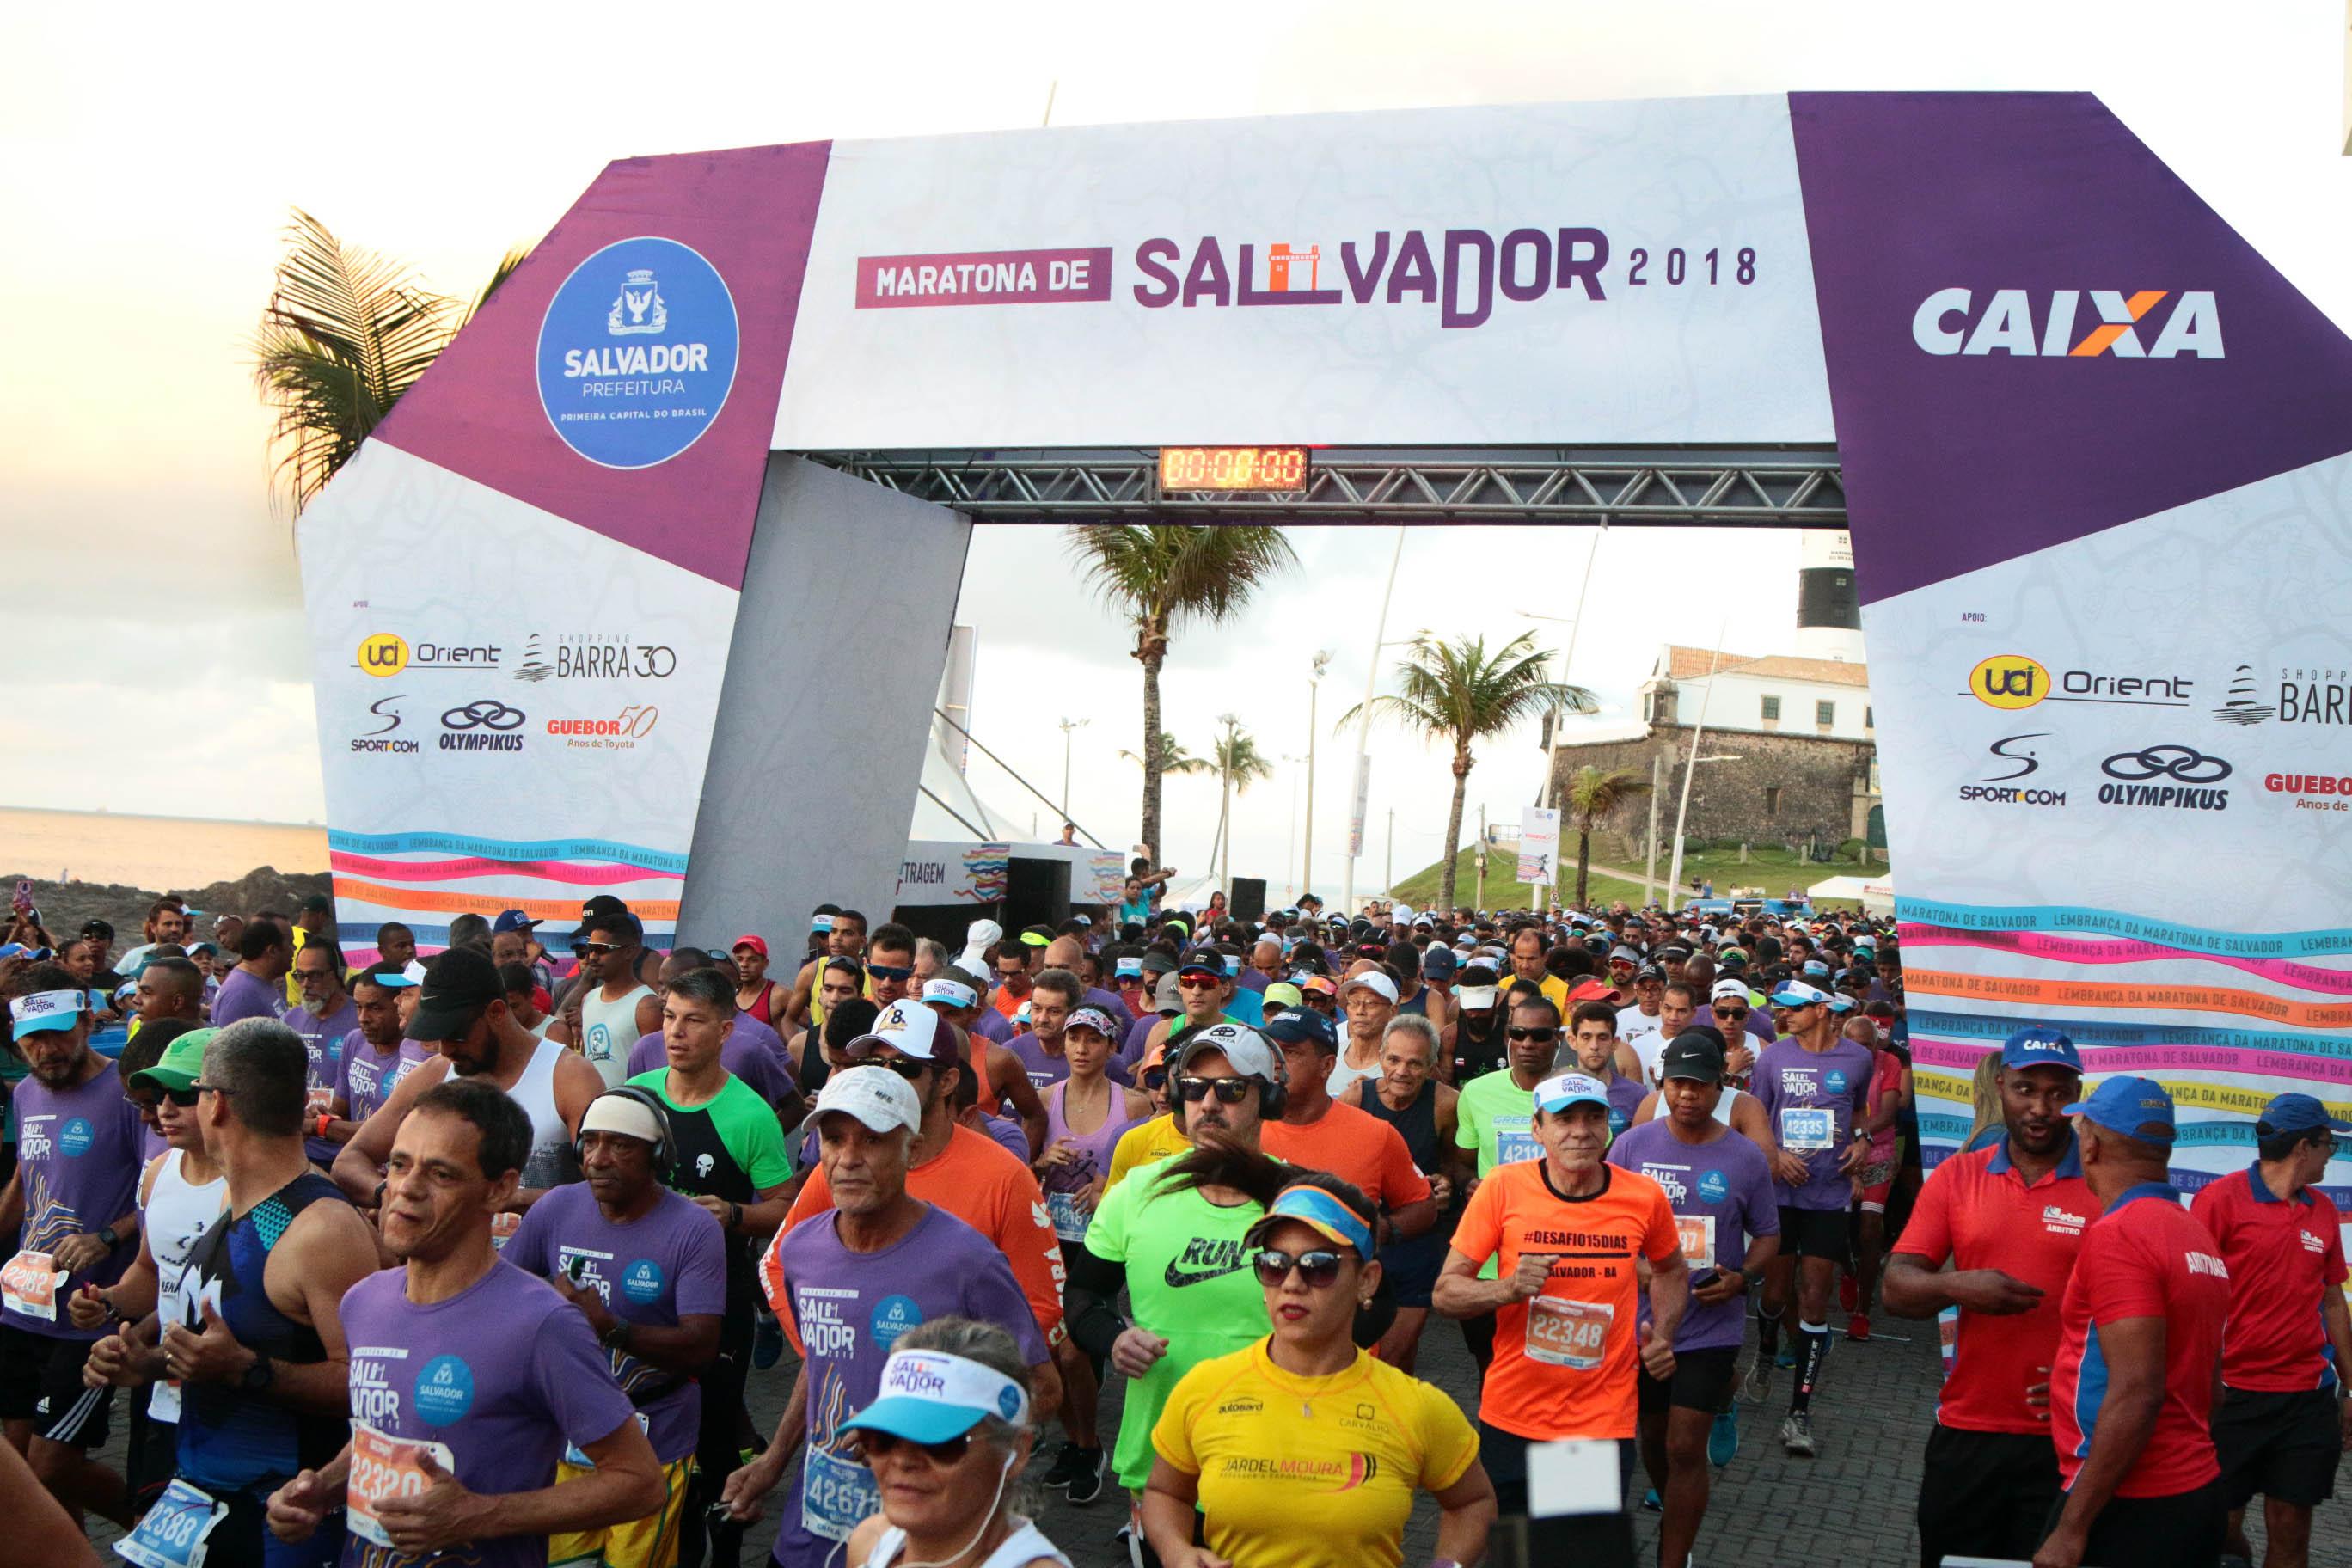 Saiba tudo sobre a Maratona Salvador que acontece neste domingo (25)